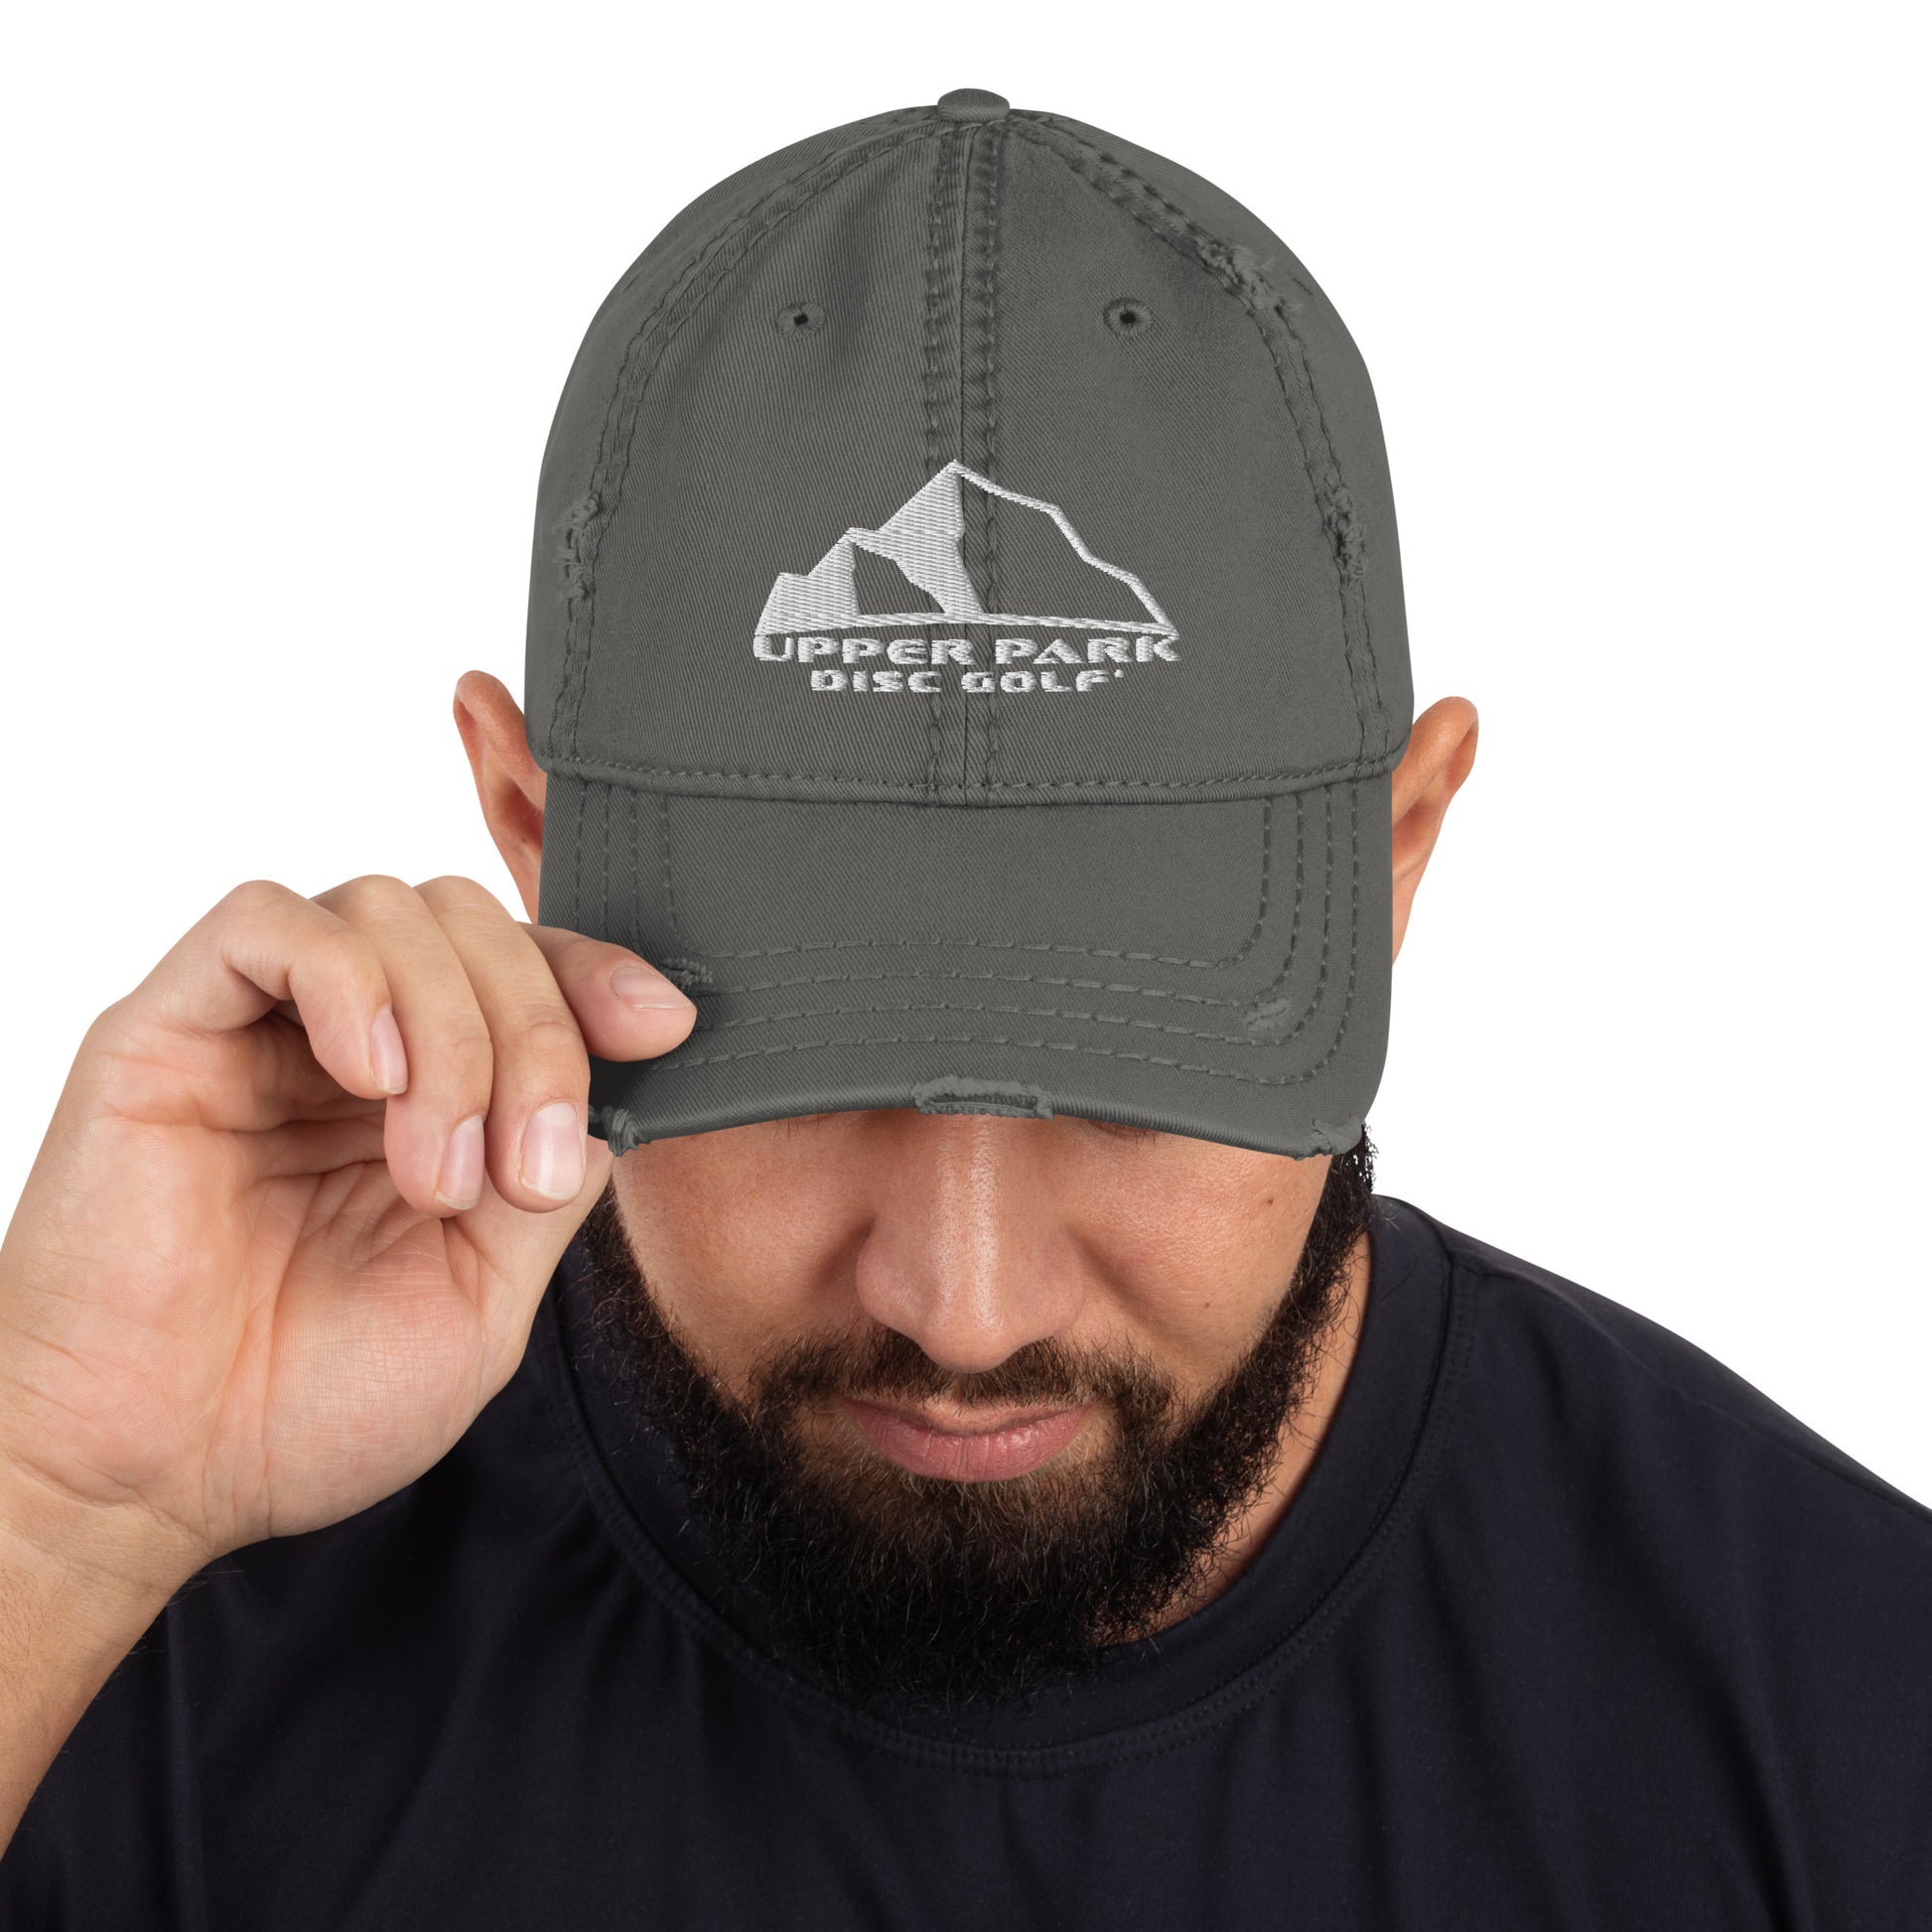 Trucker Hats – Upper Park